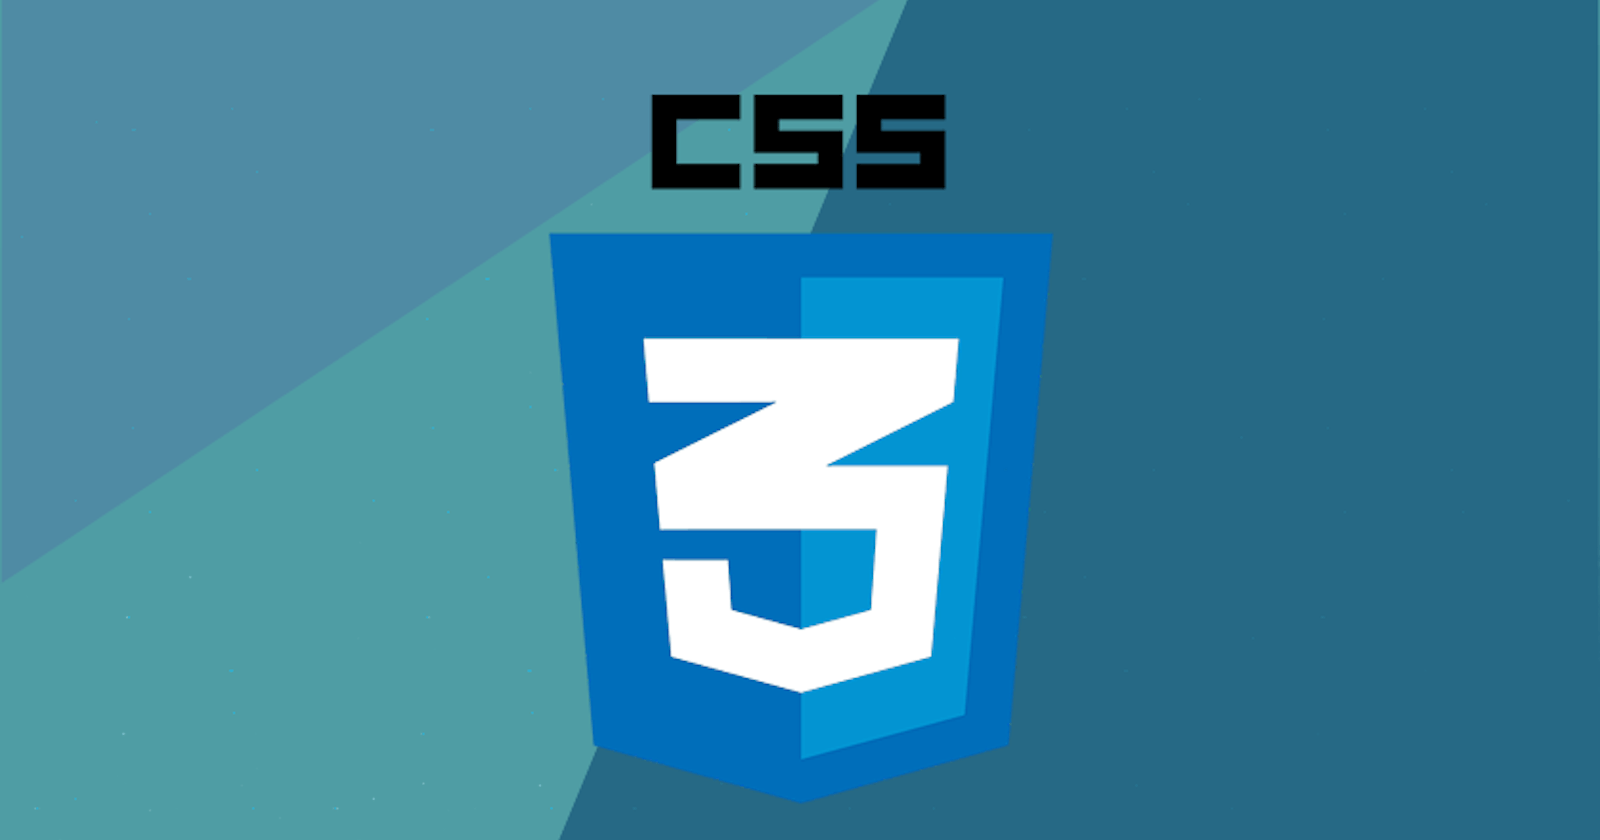 CSS summary